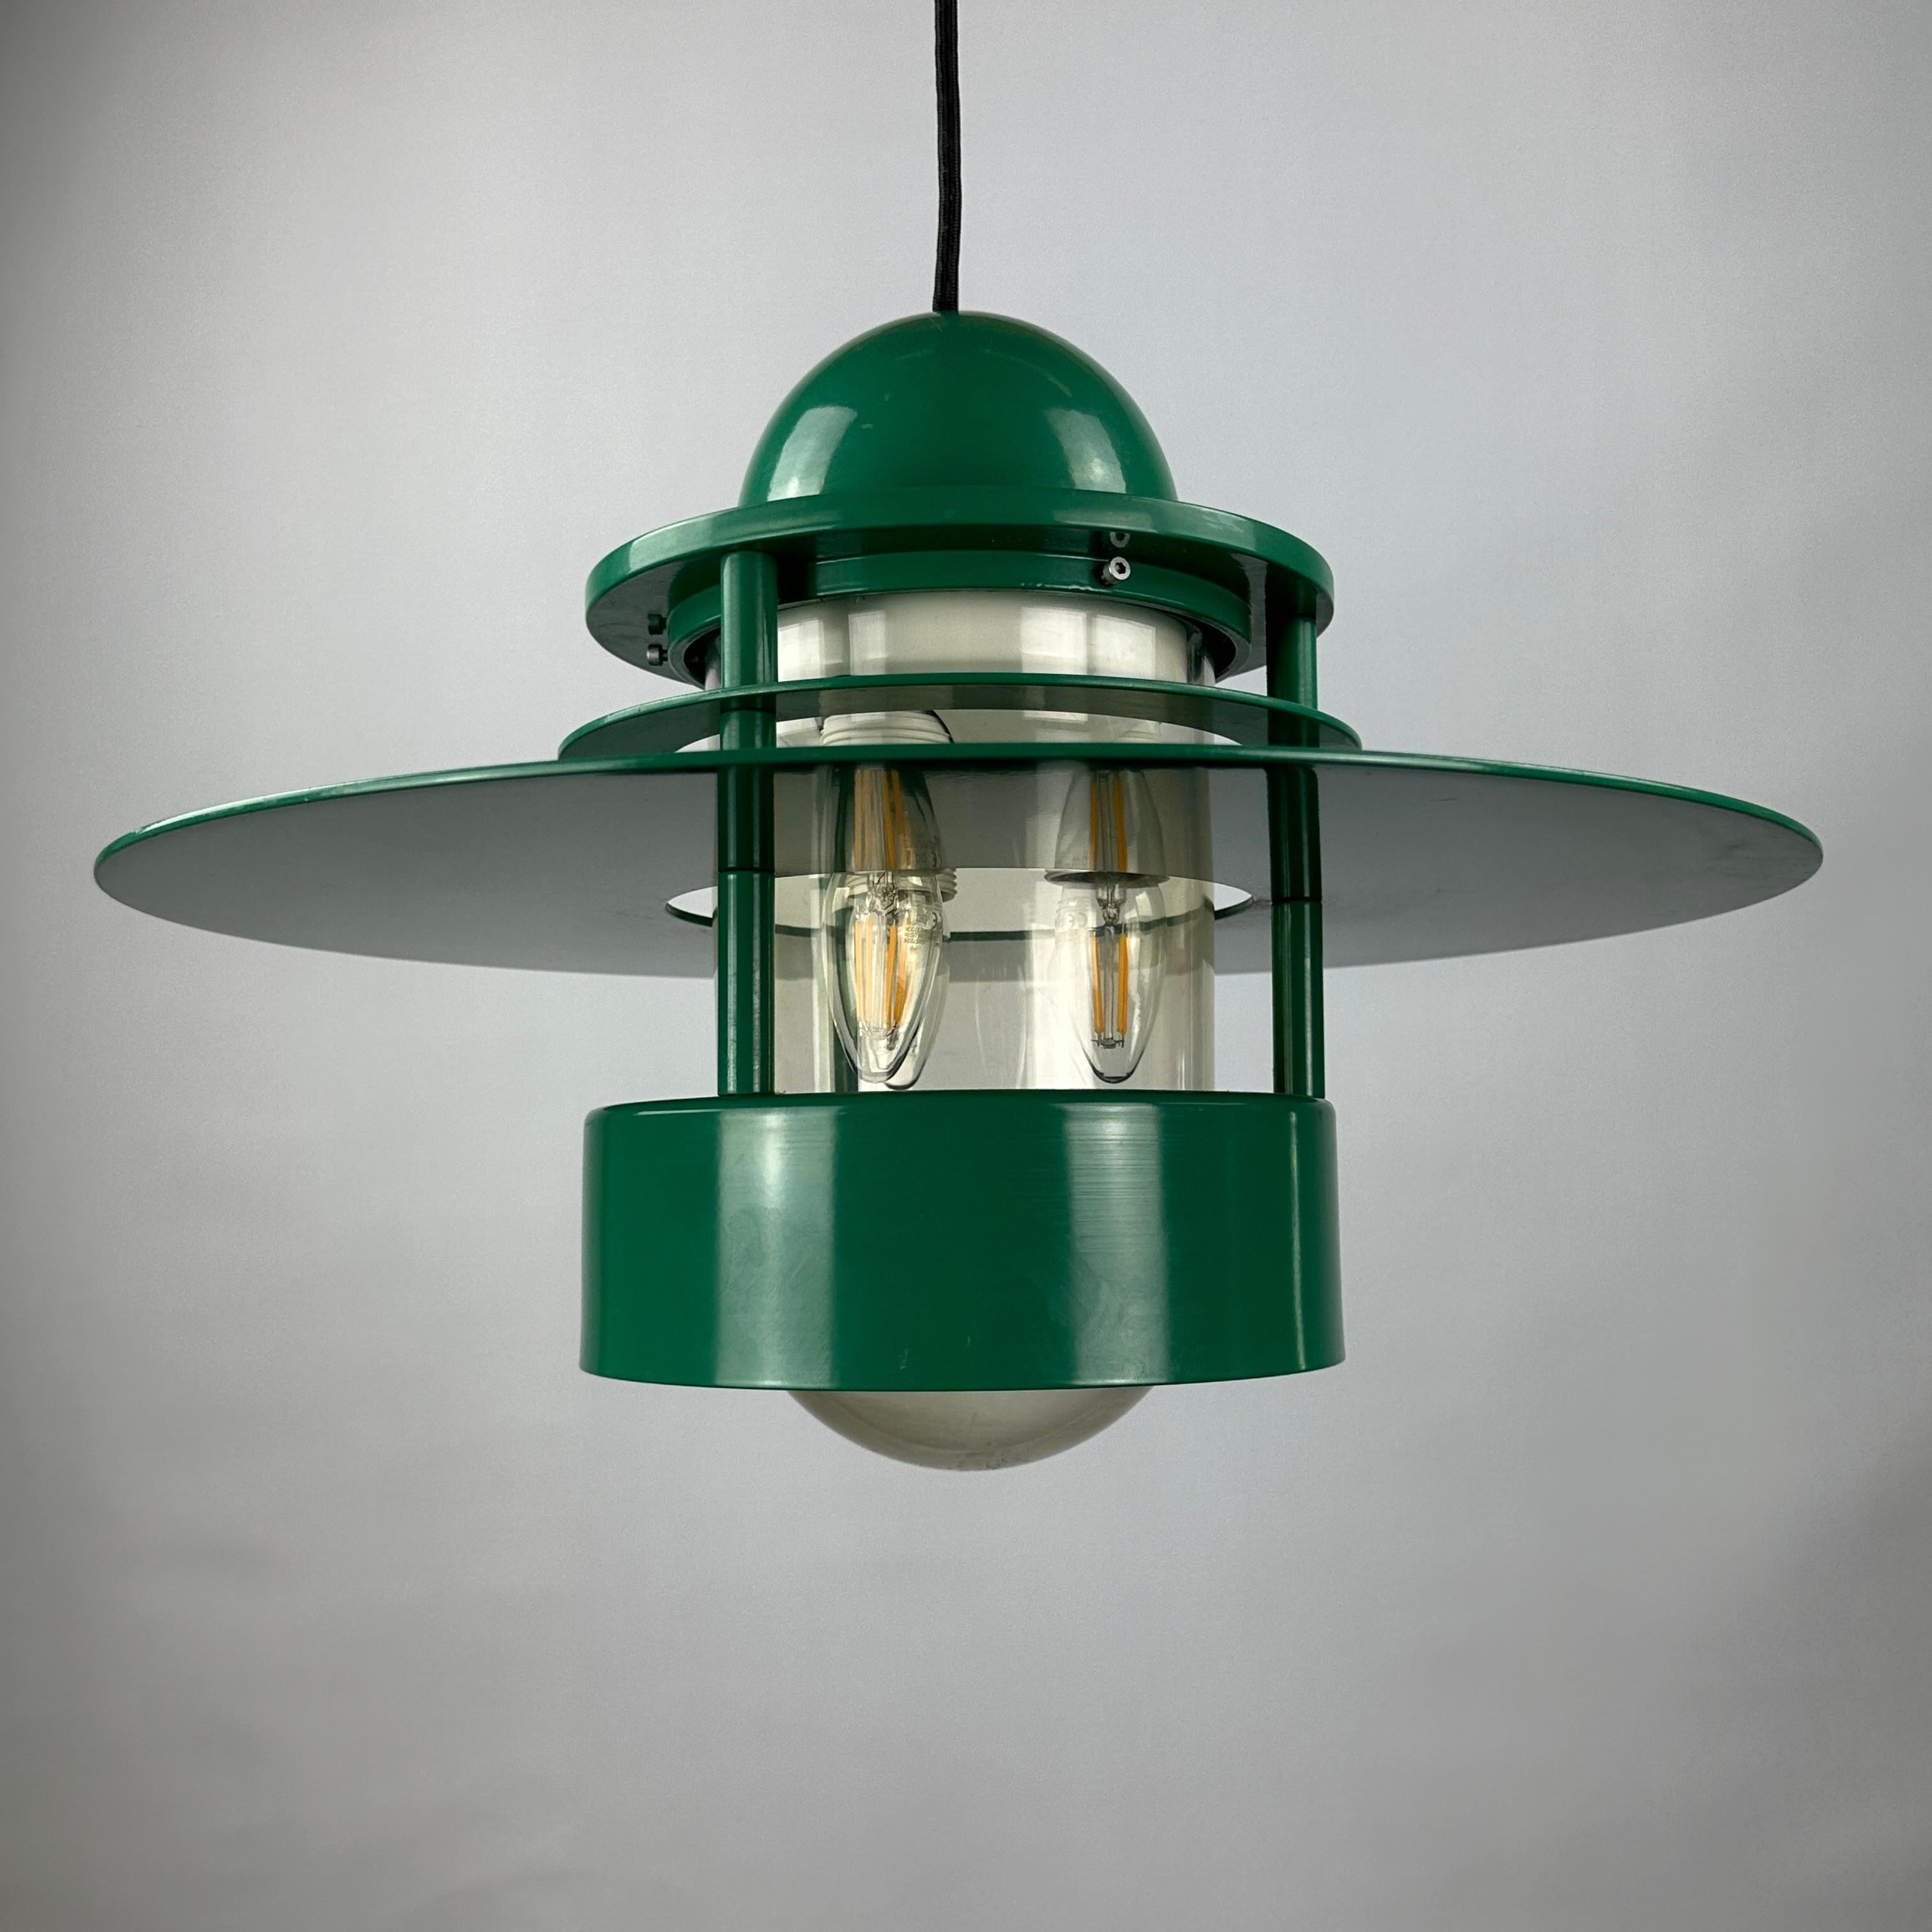 1 of 20 Louis Poulsen green pendant light Orbiter XL by Jens Møller Jensen For Sale 6